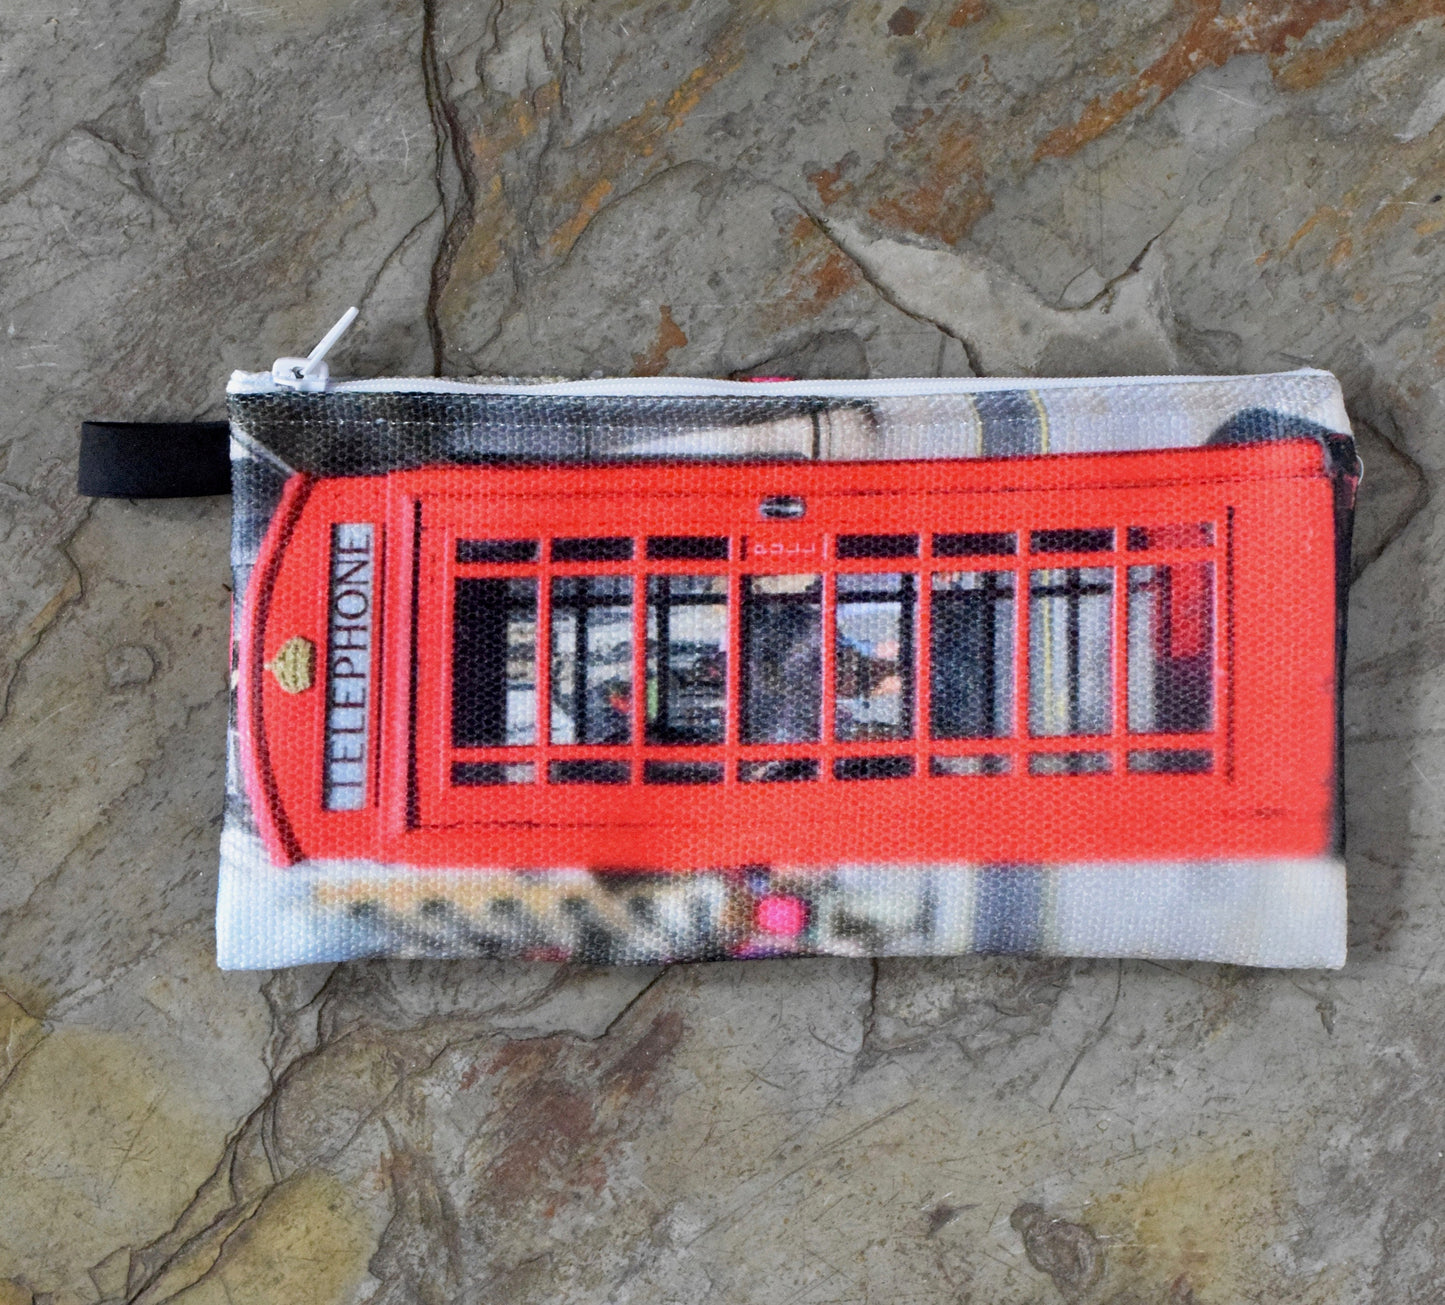 London Makeup Bag - Small Makeup Bag of a London Telephone Booth